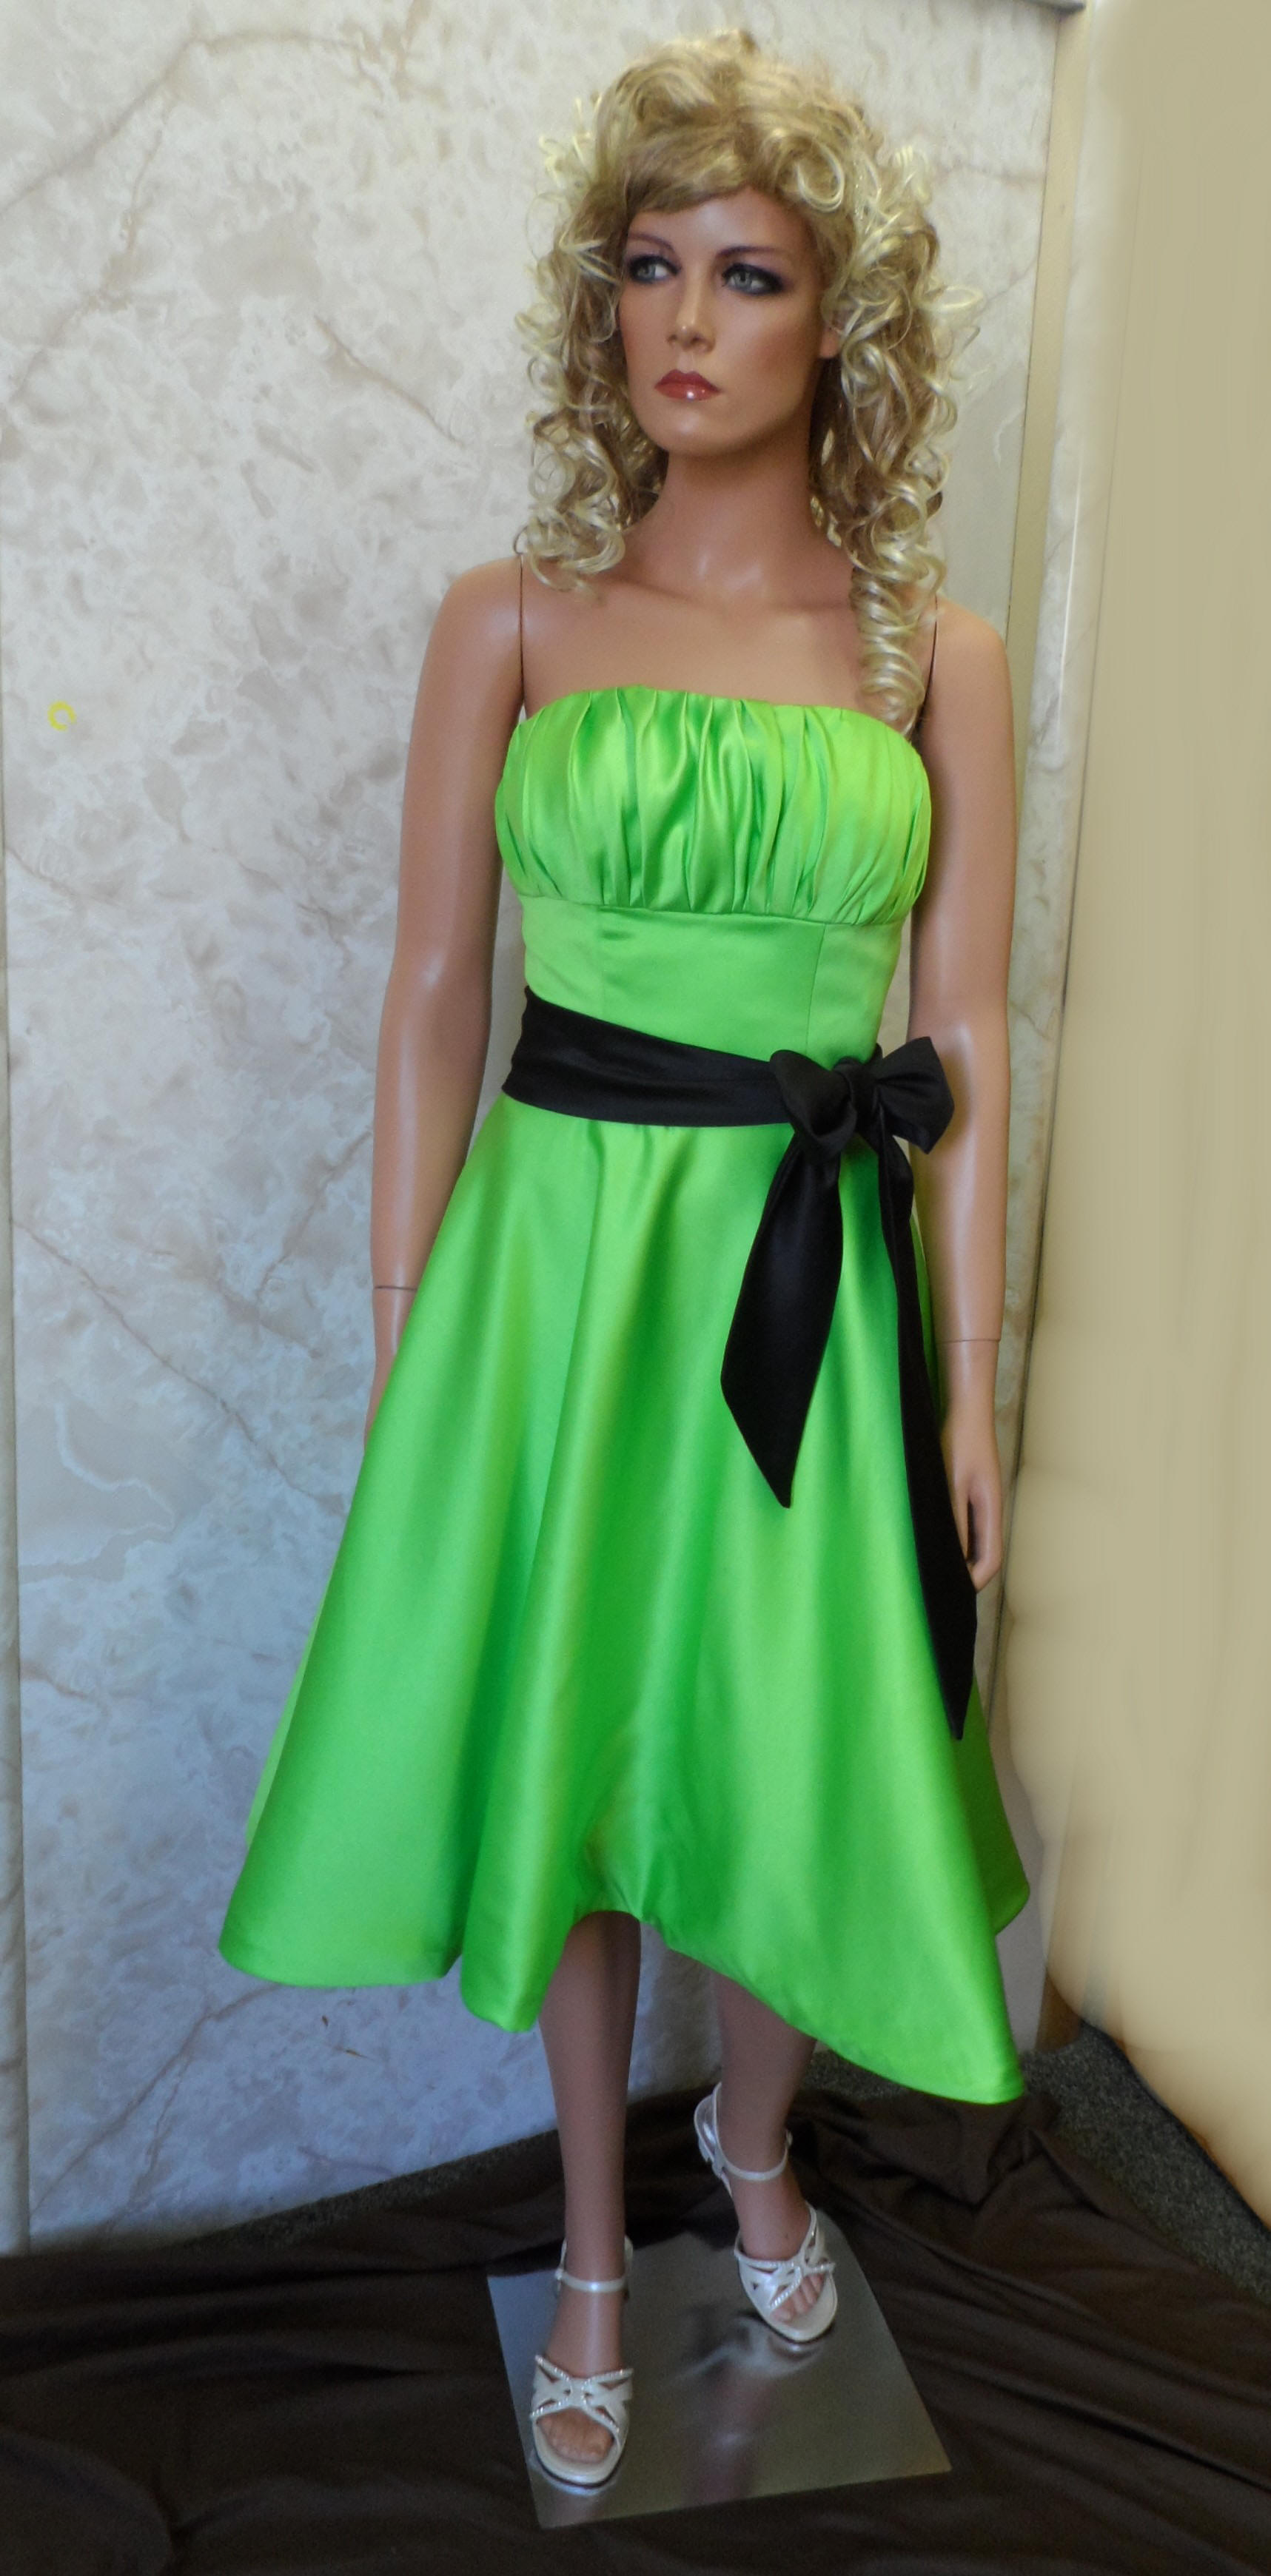 short green bridesmaid dress with black sash